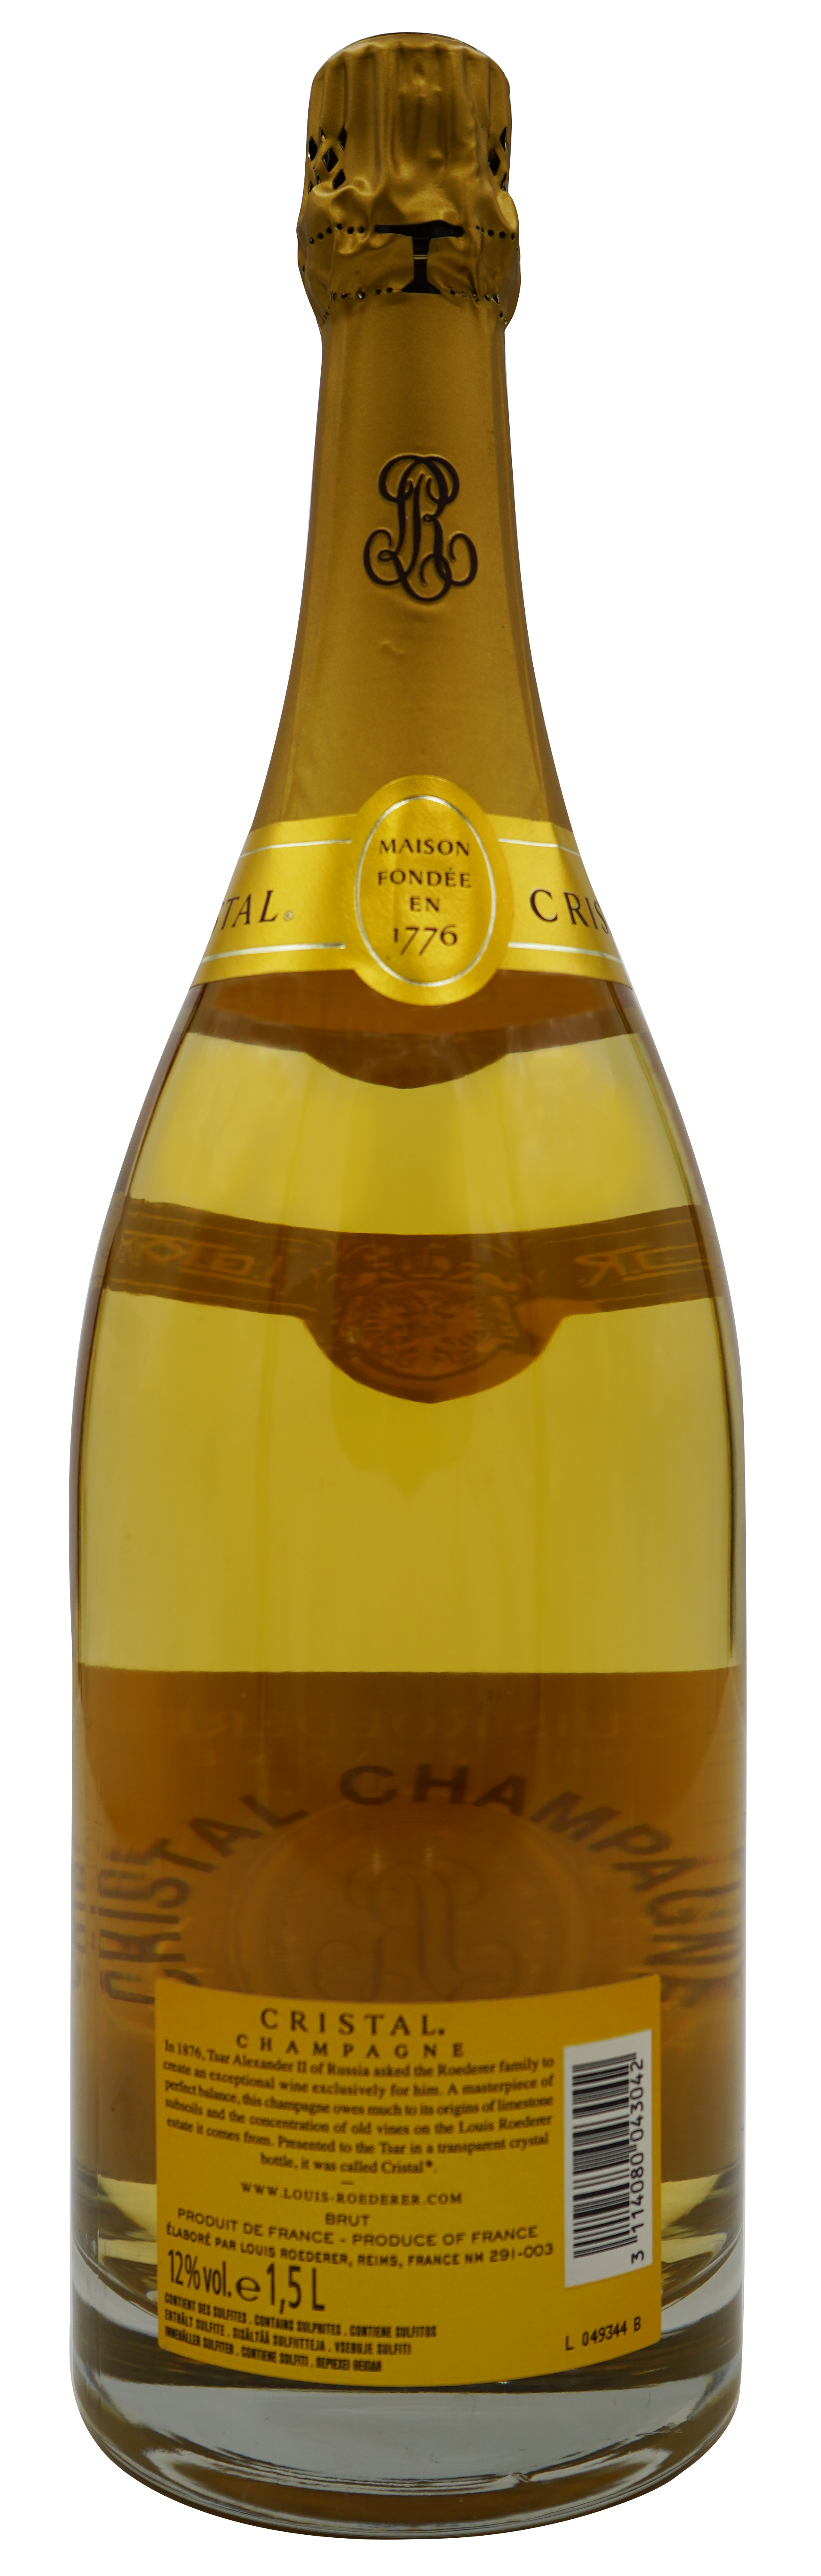 Louis Roederer Champagner Cristal 2009 - back label